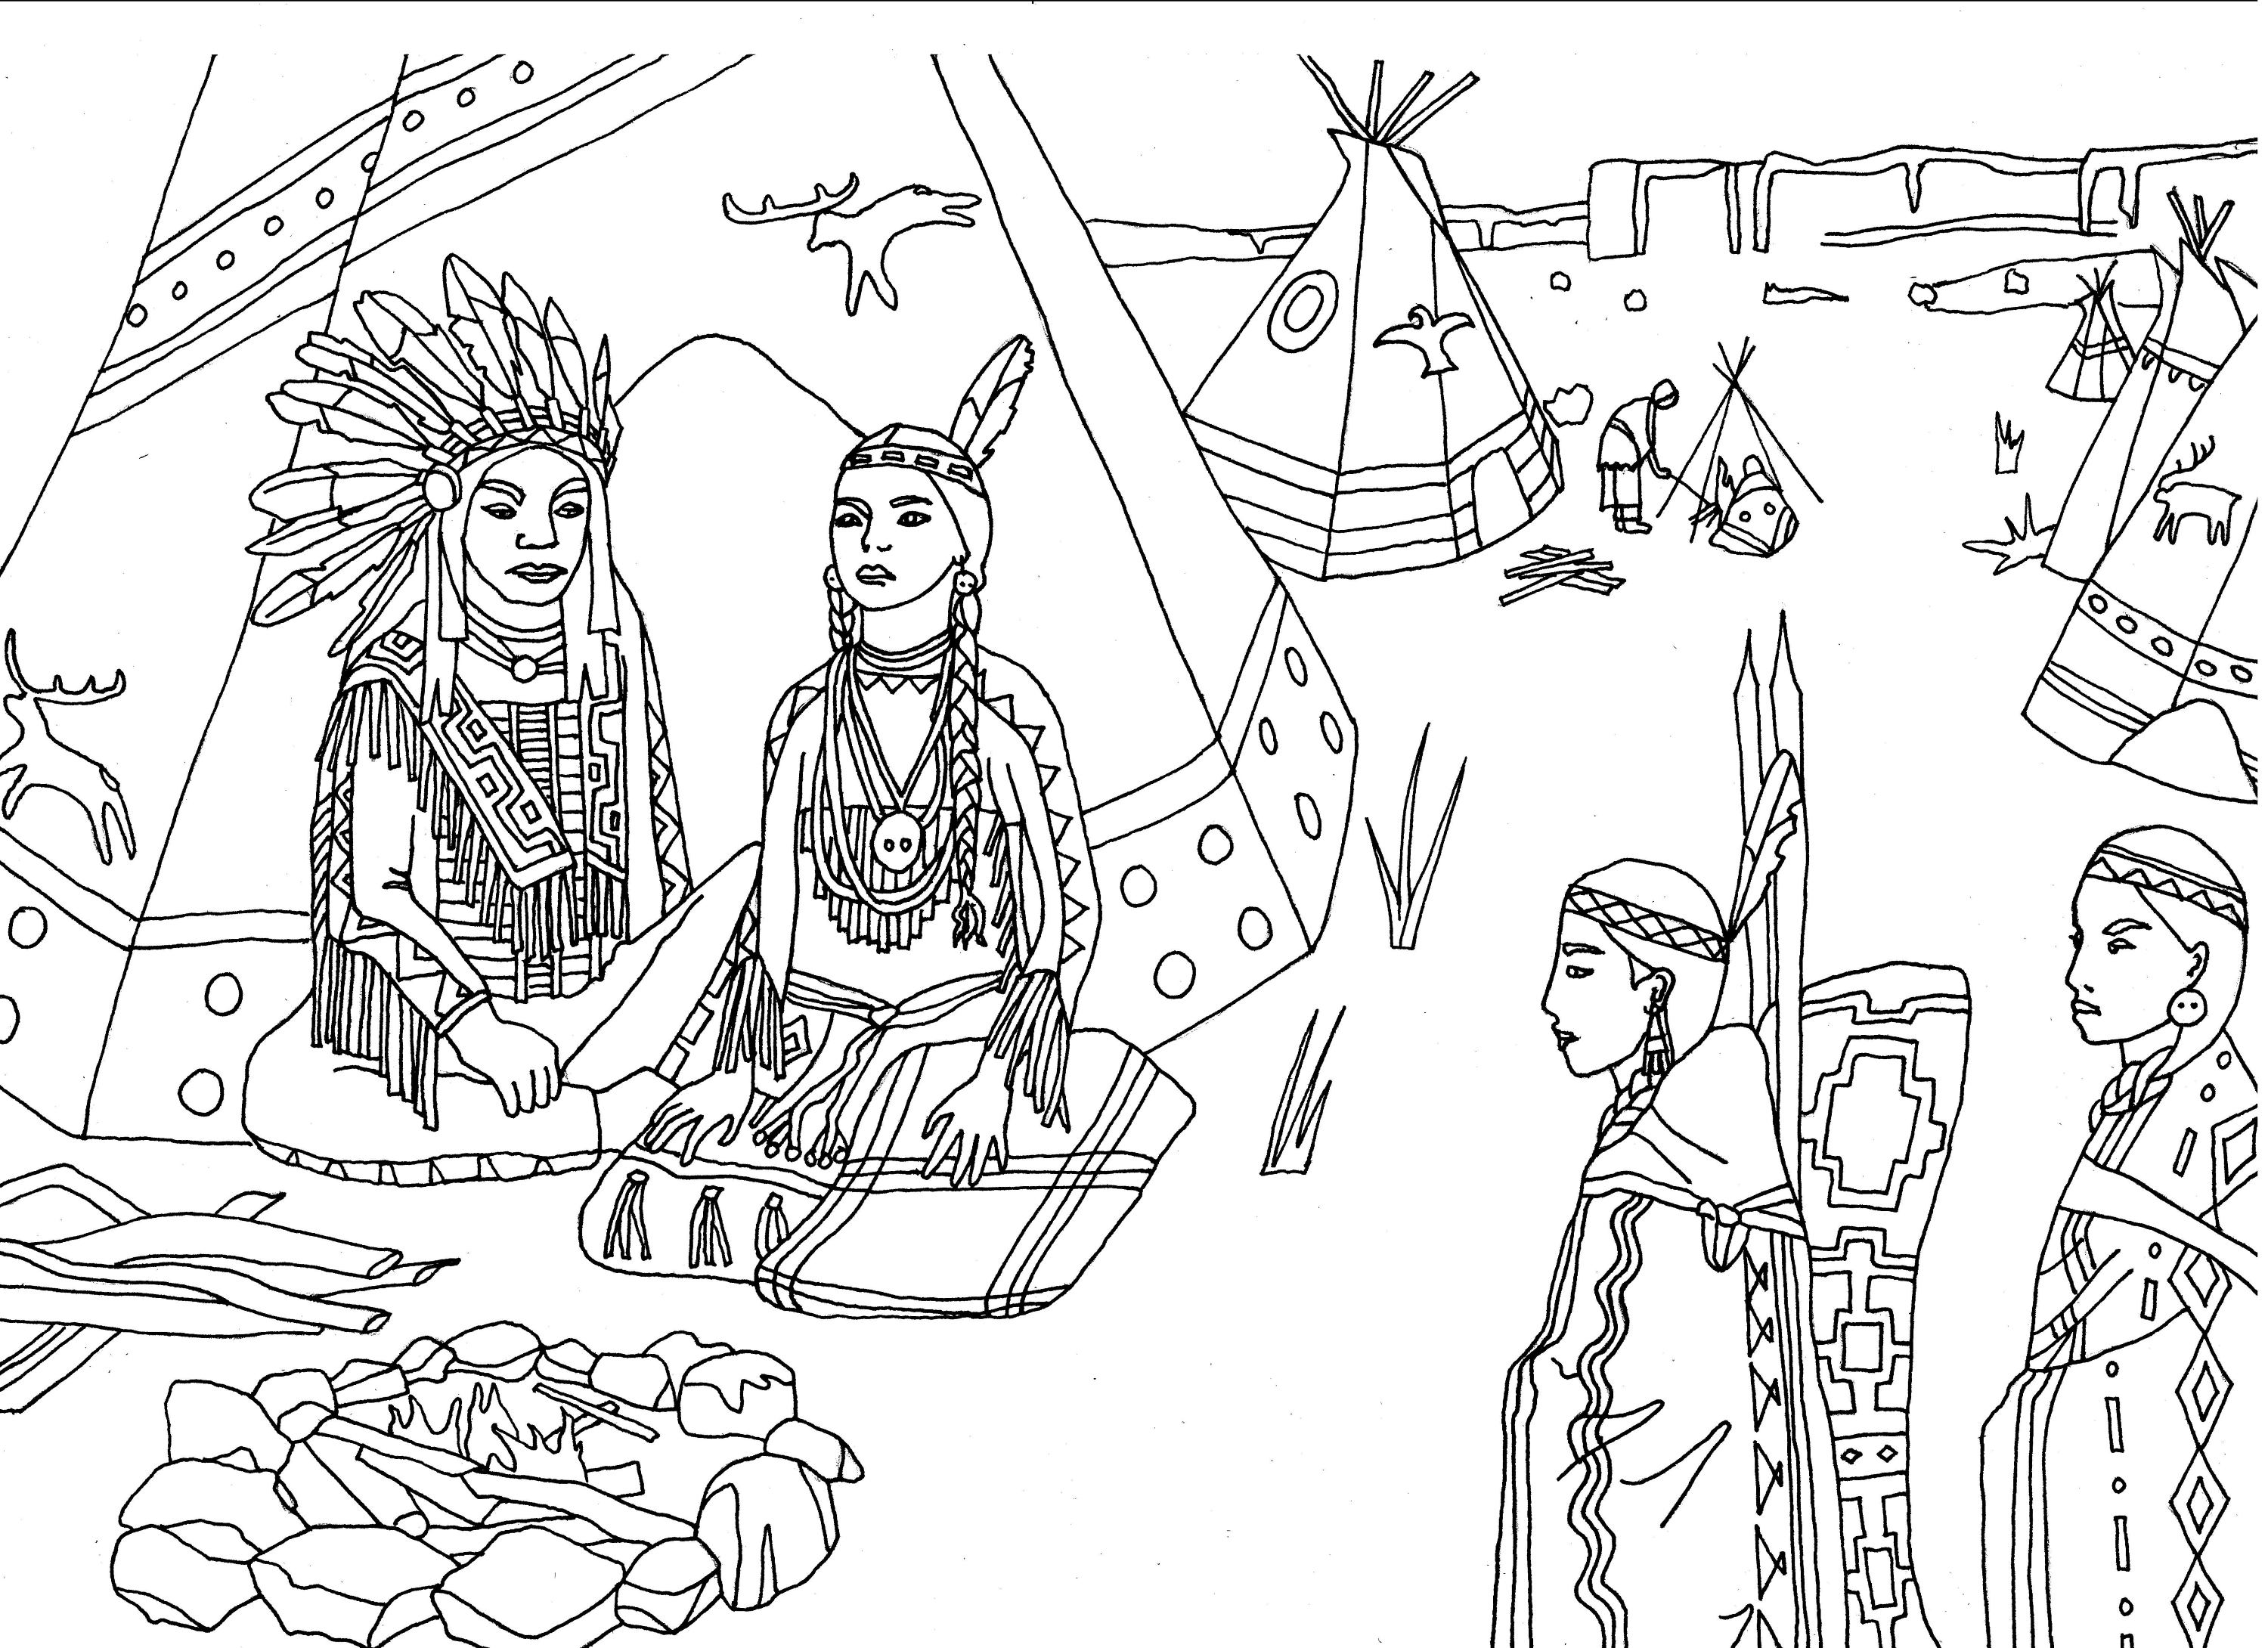 Nativos americanos (índios) sentados em frente a uma tenda, Artista : Marion C